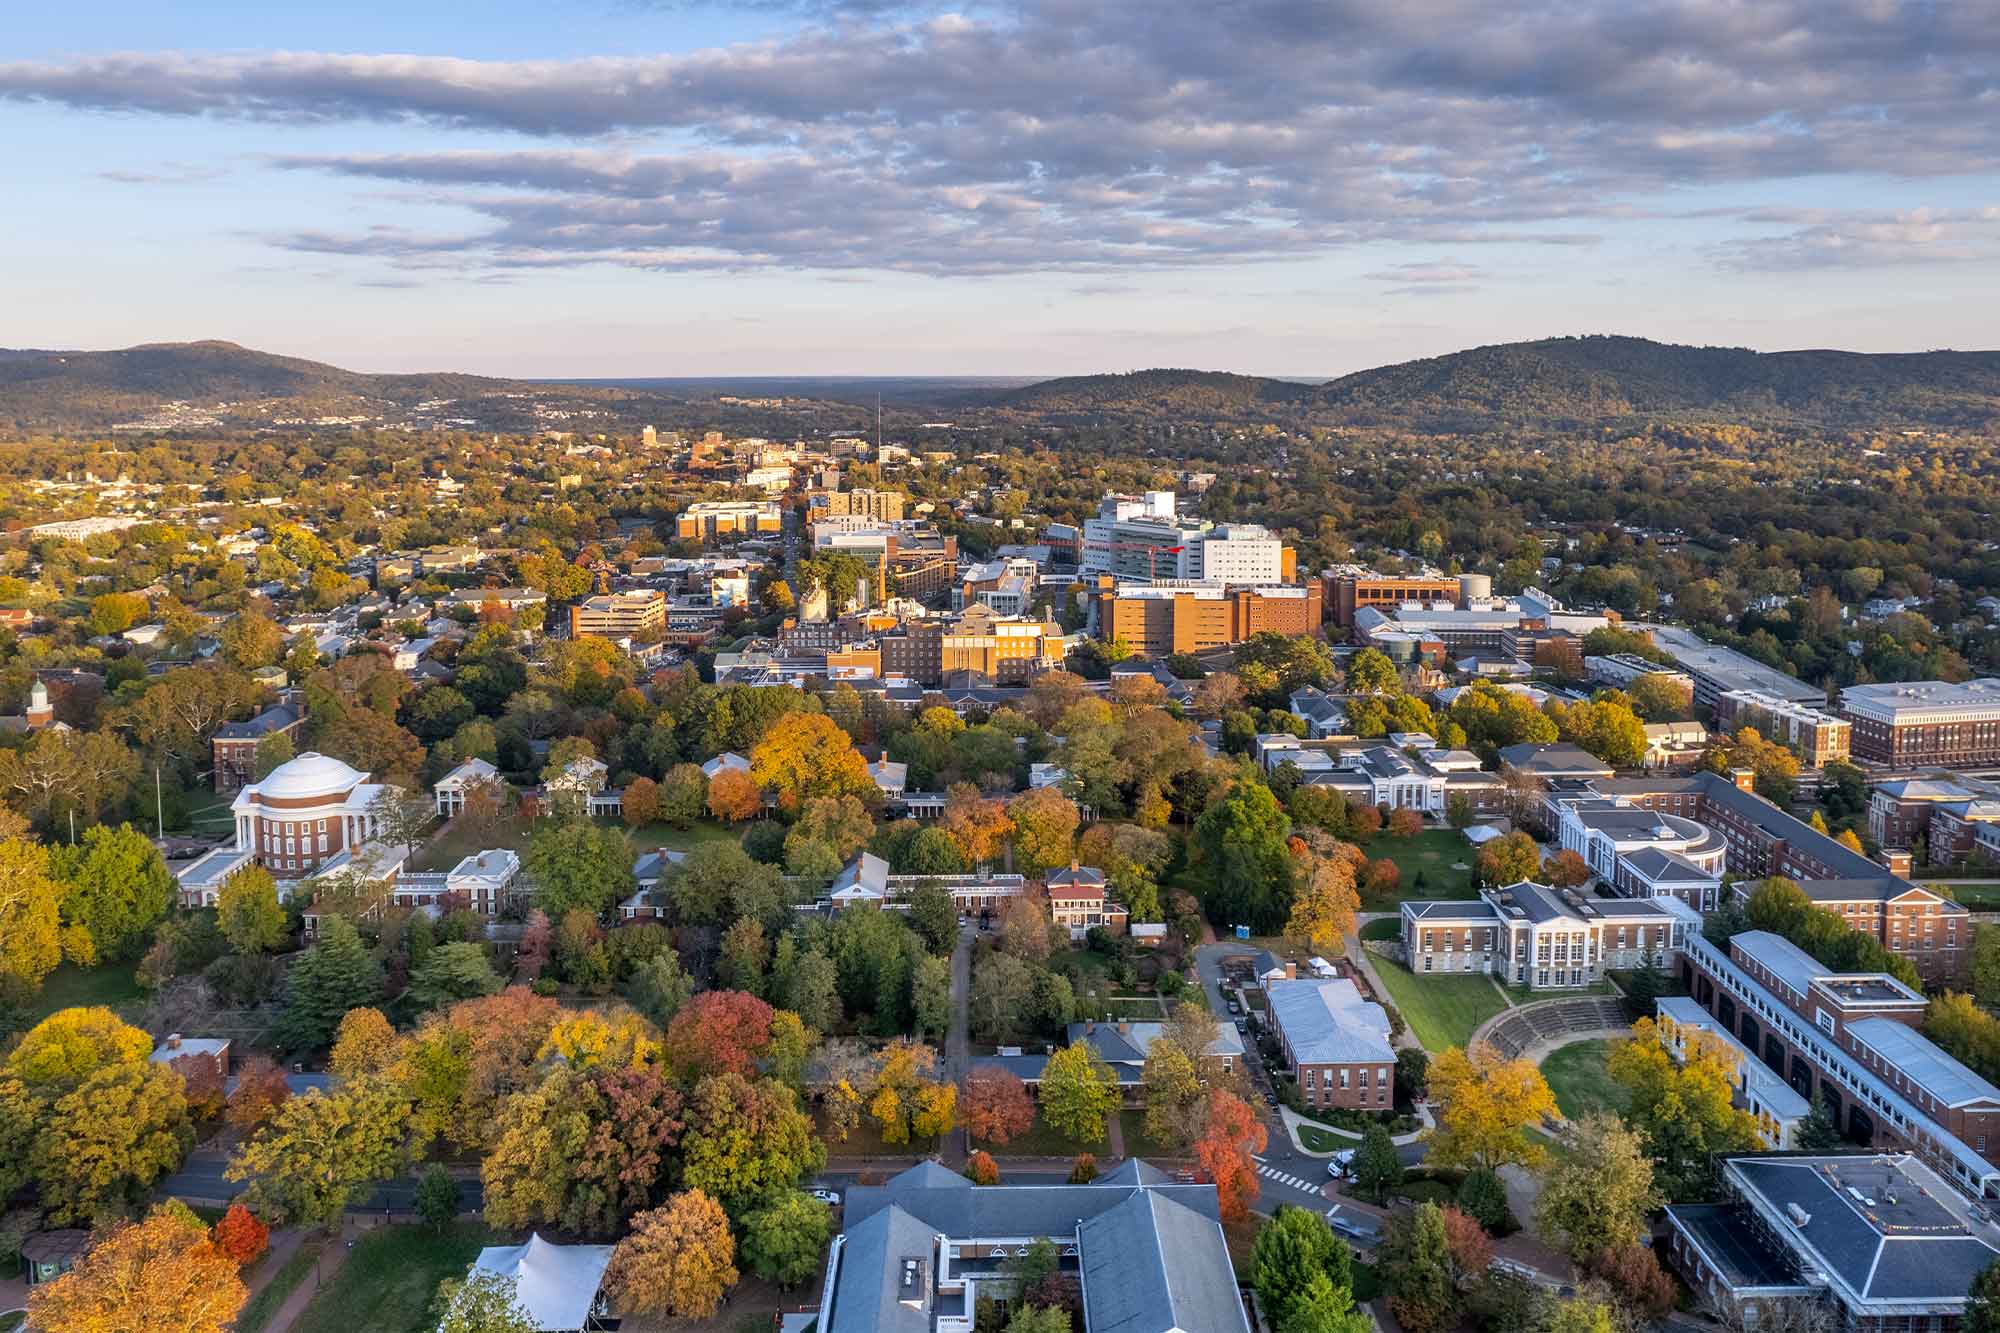 Aerial View of UVA Campus